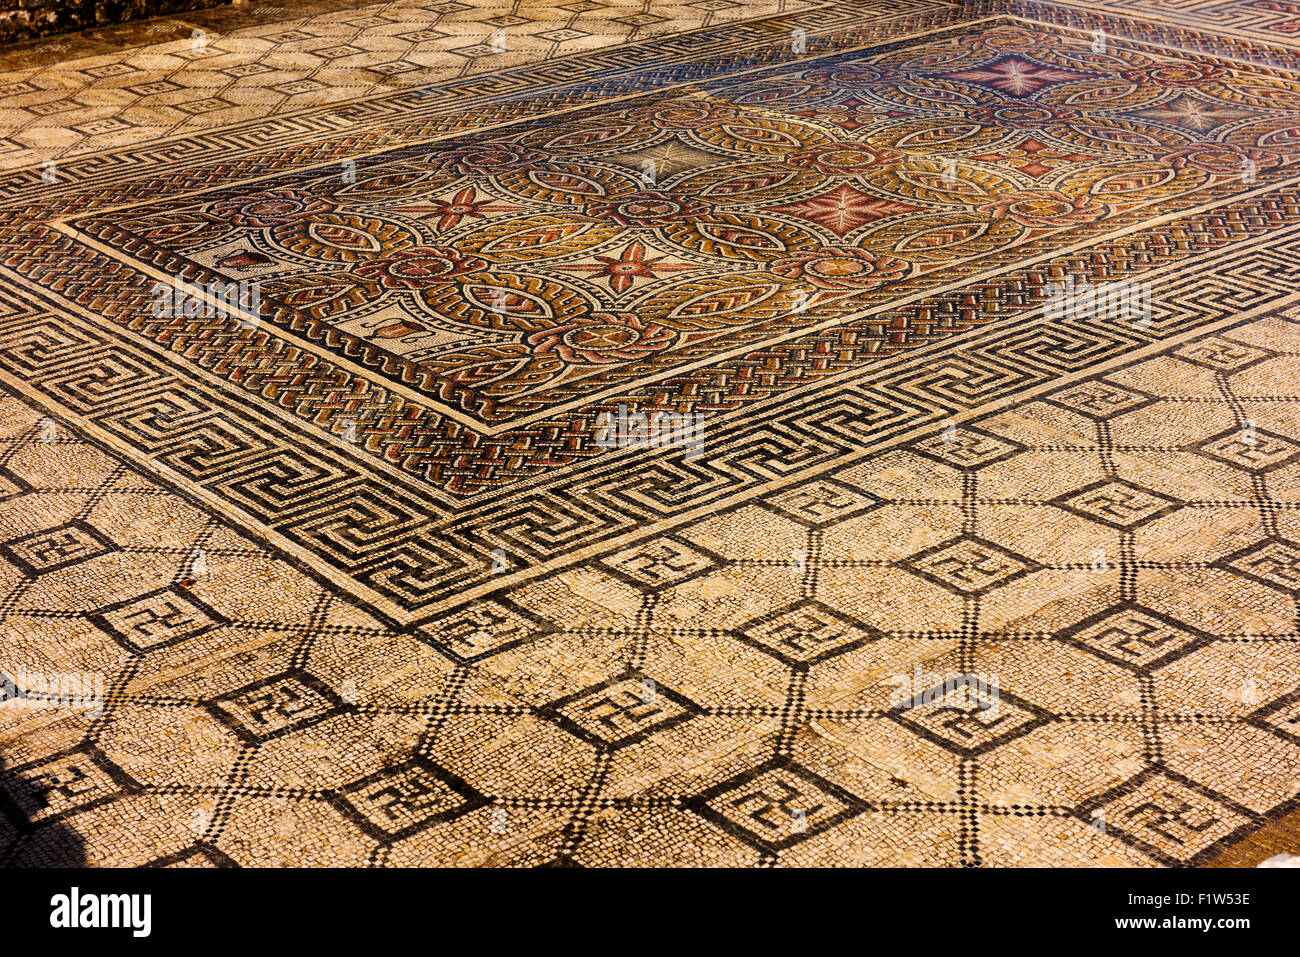 La svastica è una parte prominente di questo mosaico a Conimbriga, un antico insediamento romano, nei pressi di giorno moderno Coimbra. Foto Stock